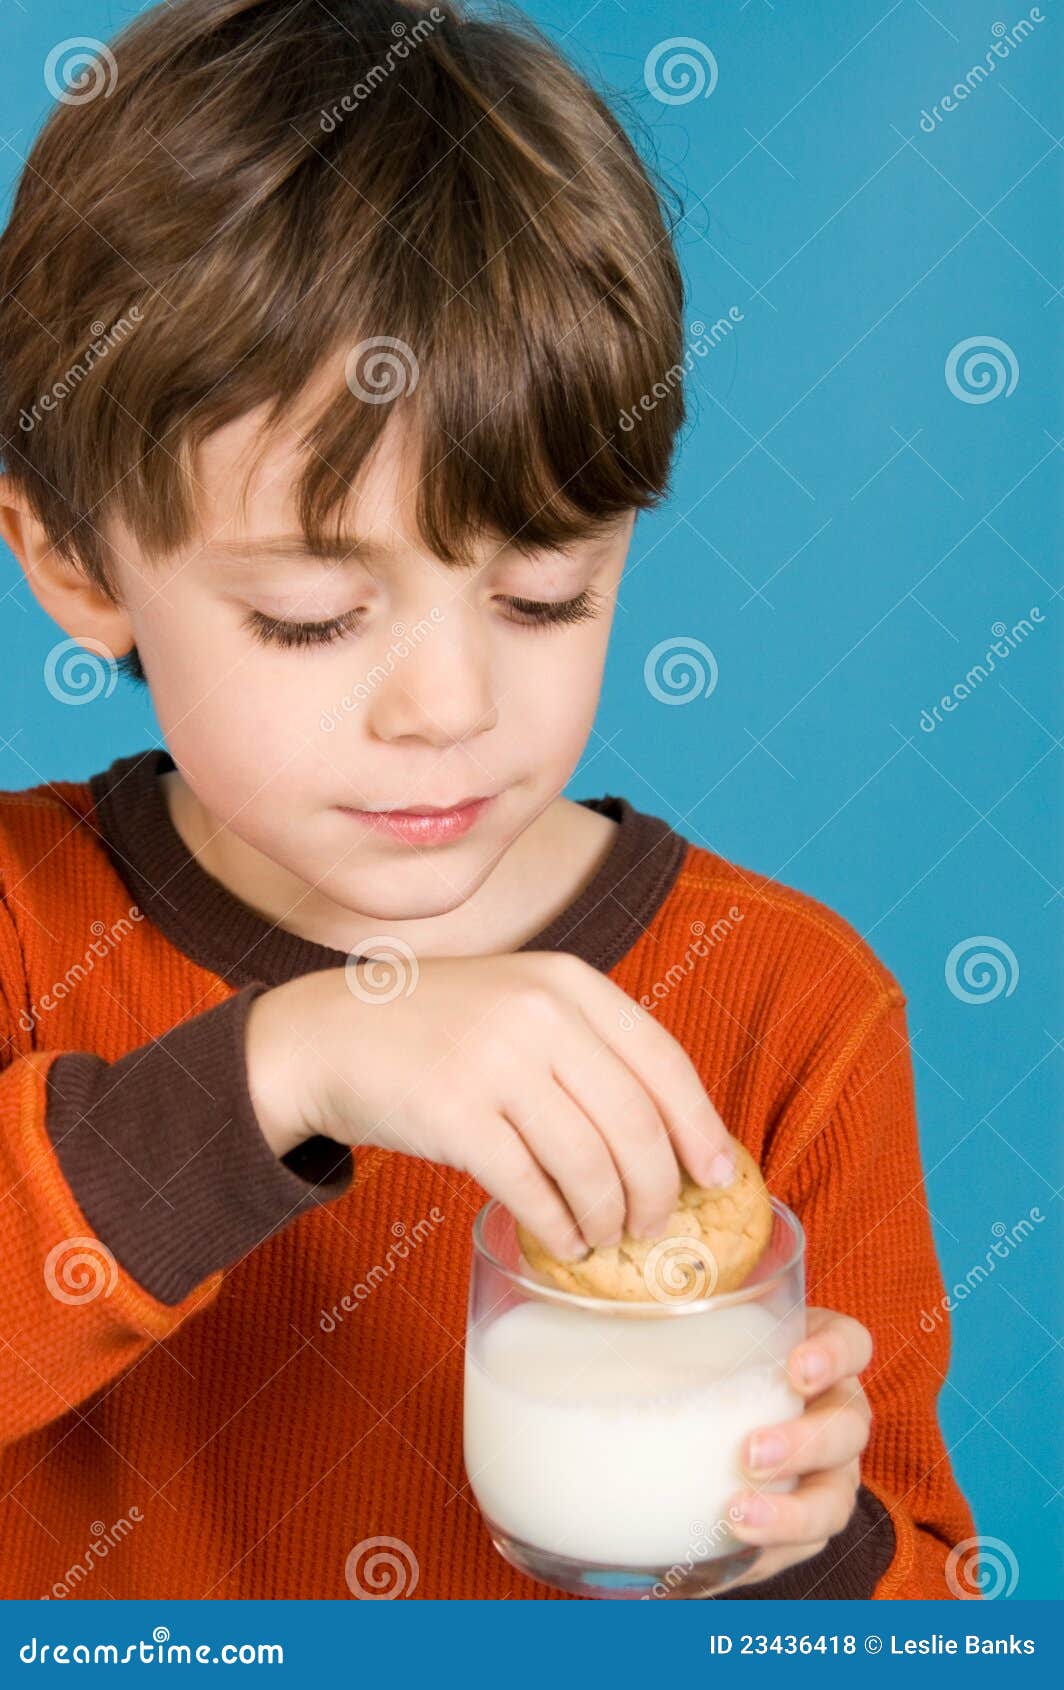 Boy eating cookies and milk - boy-eating-cookies-milk-23436418